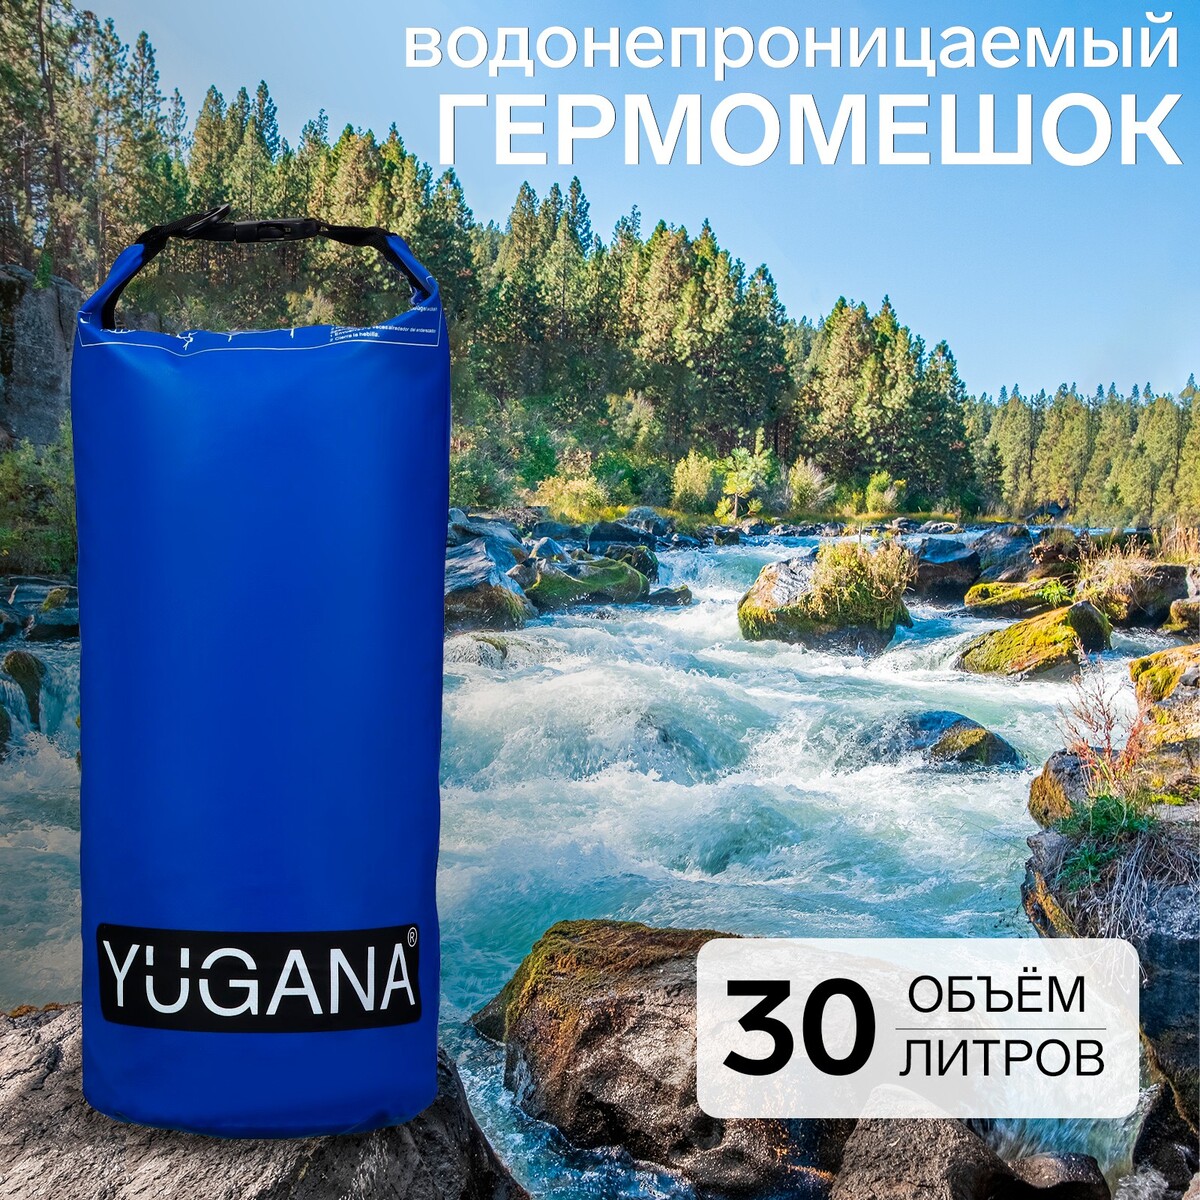 Гермомешок yugana, пвх, водонепроницаемый 30 литров, один ремень, синий один на один бессонница